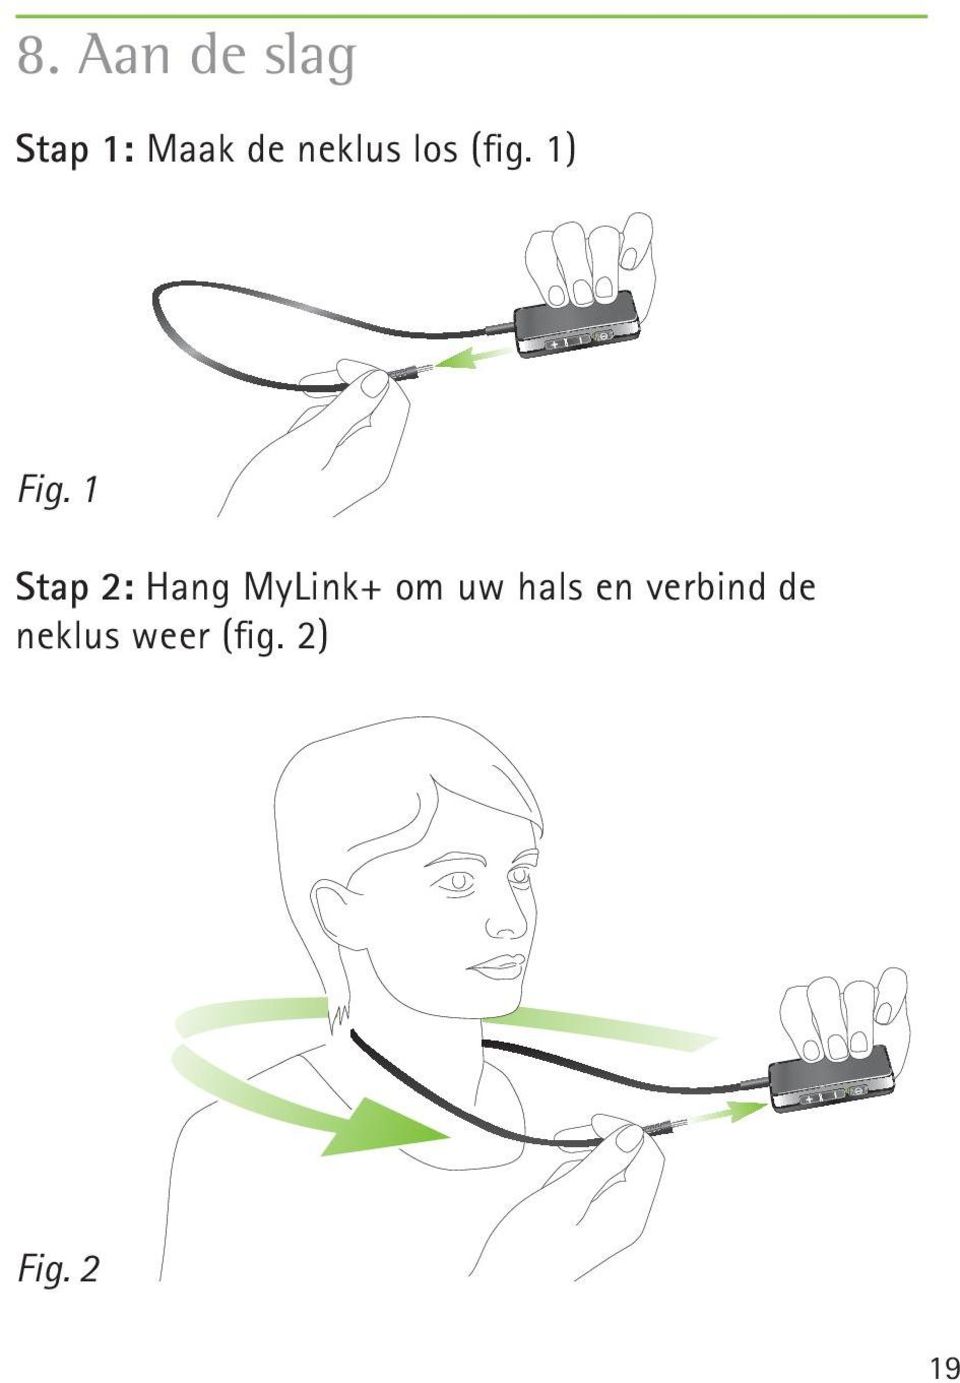 1 Stap 2: Hang MyLink+ om uw hals